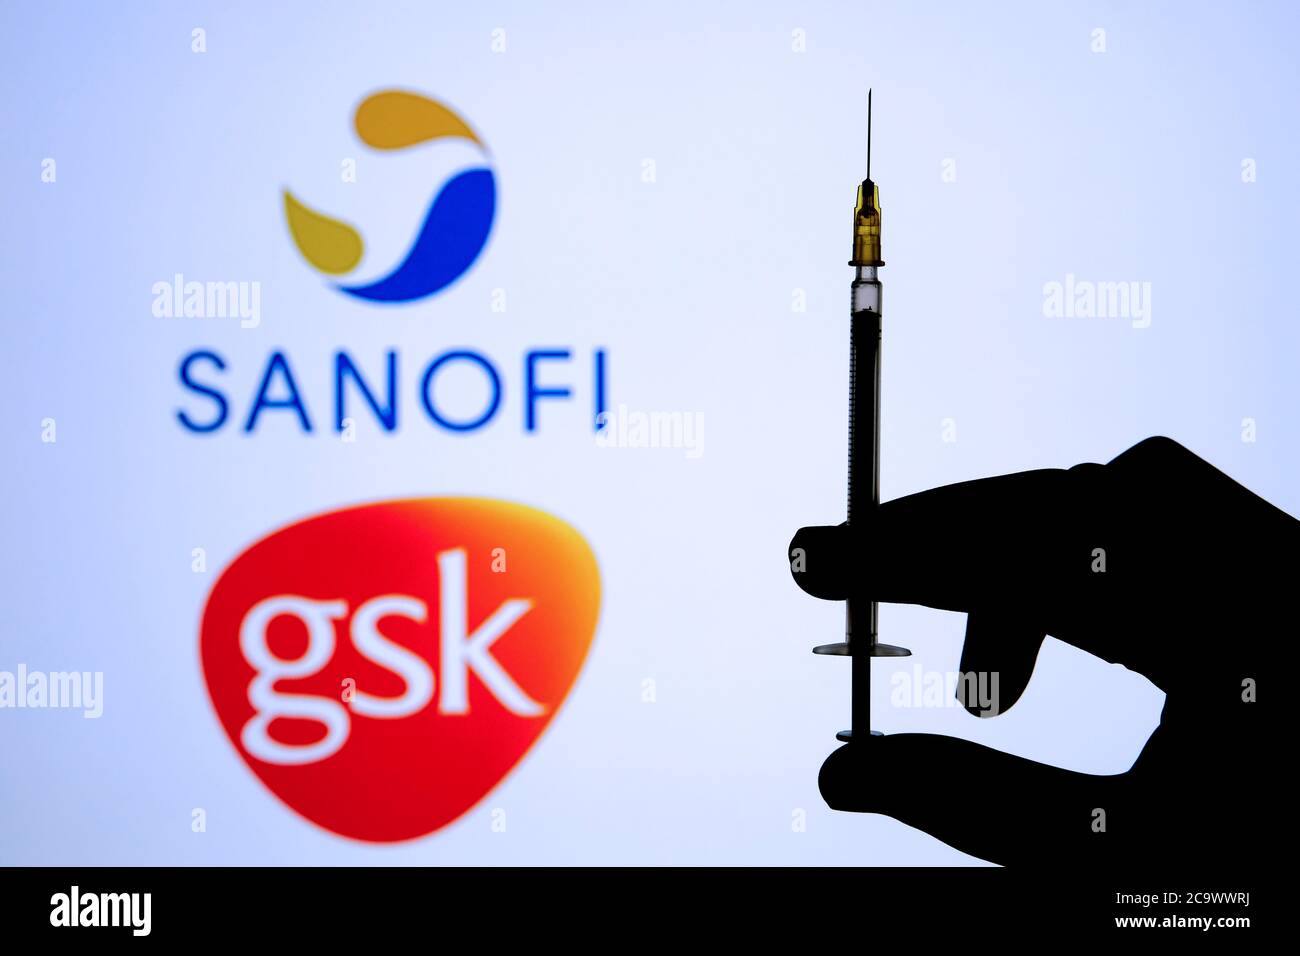 Stone / UK - 2 août 2020 : LOGOS SANOFI GSK sur fond flou et poignée de seringue en silhouette main sur le devant. Concept pour le vaccin COVID-19. Sélection Banque D'Images